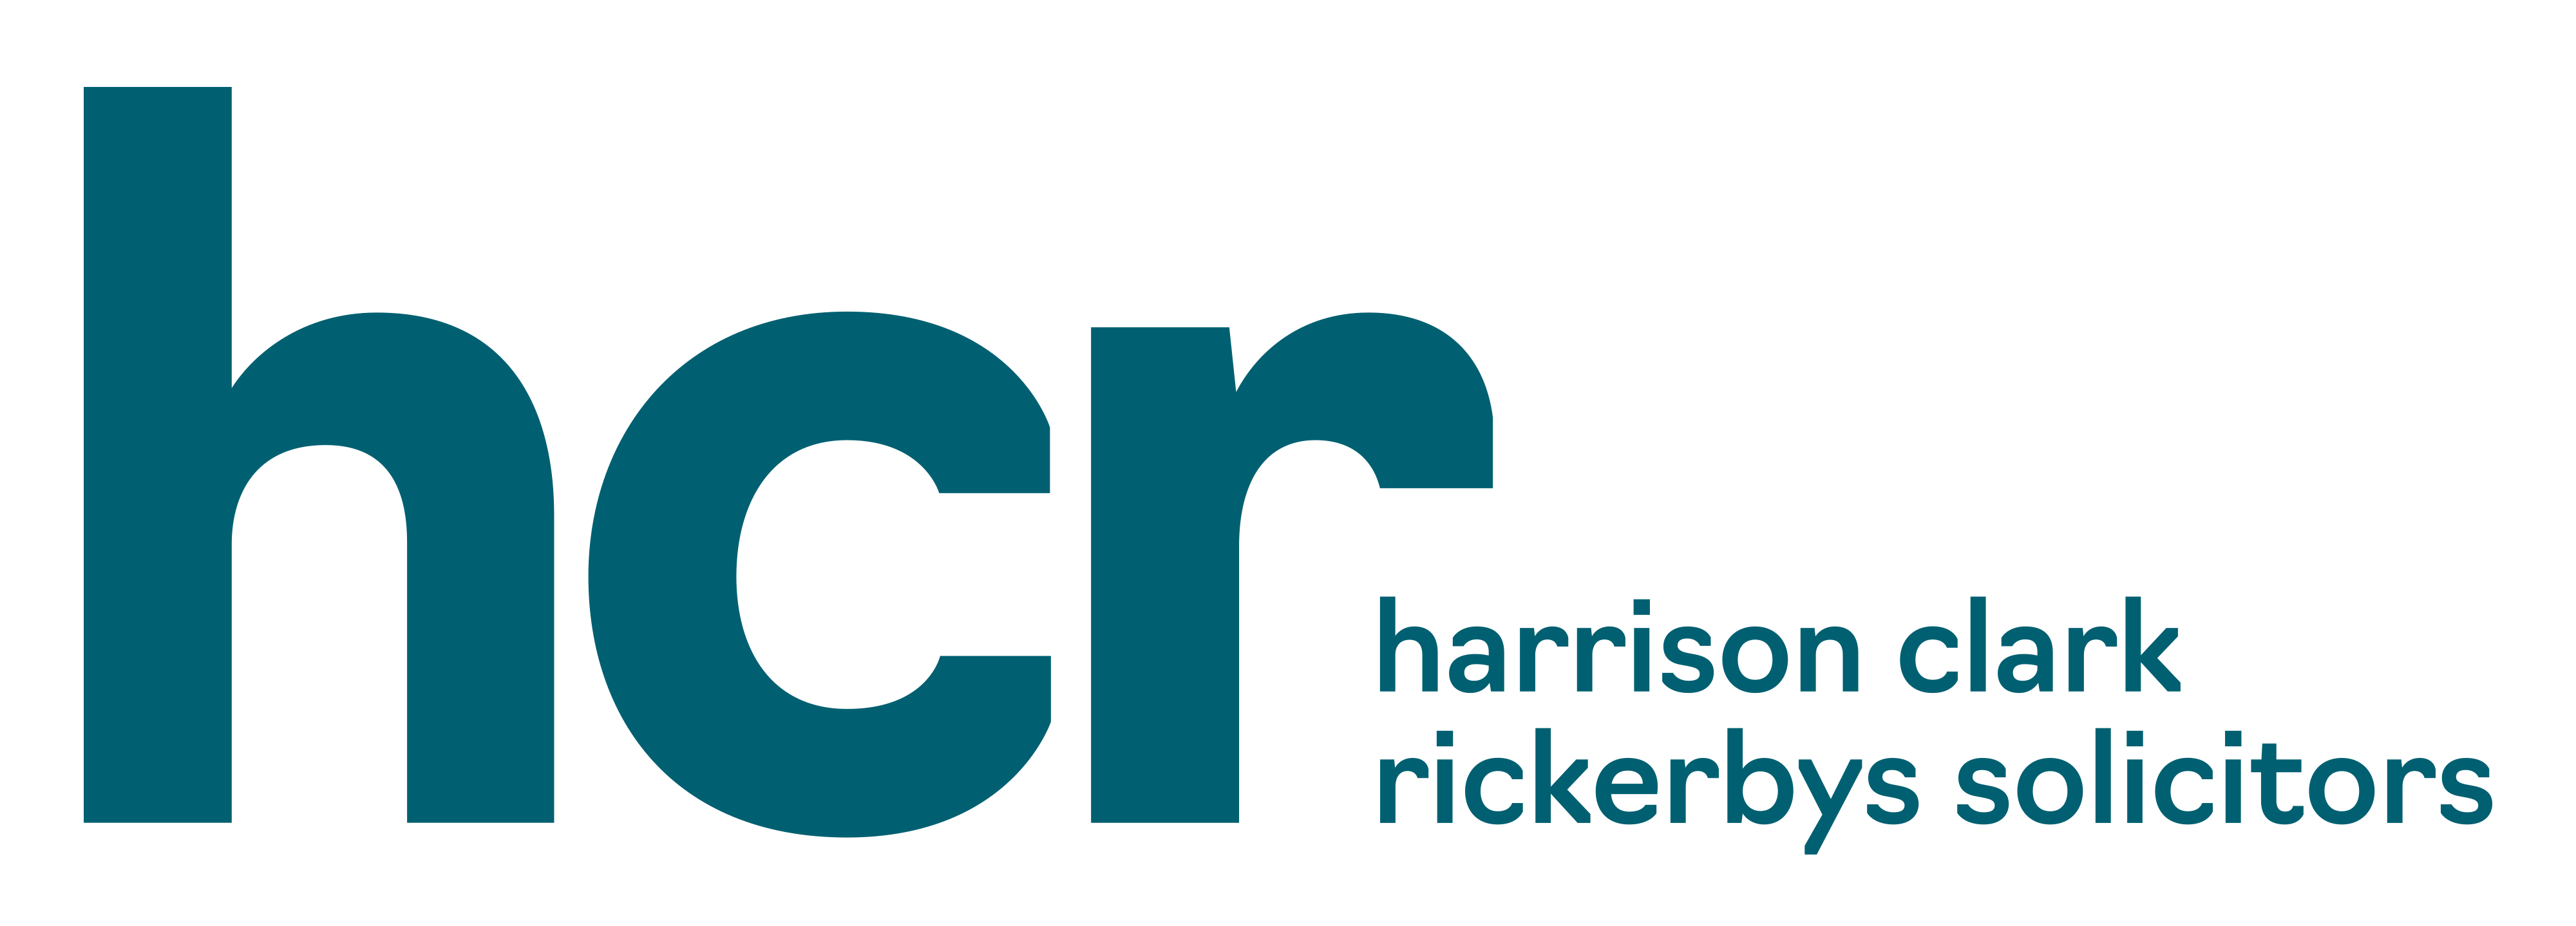 HCR teal logo